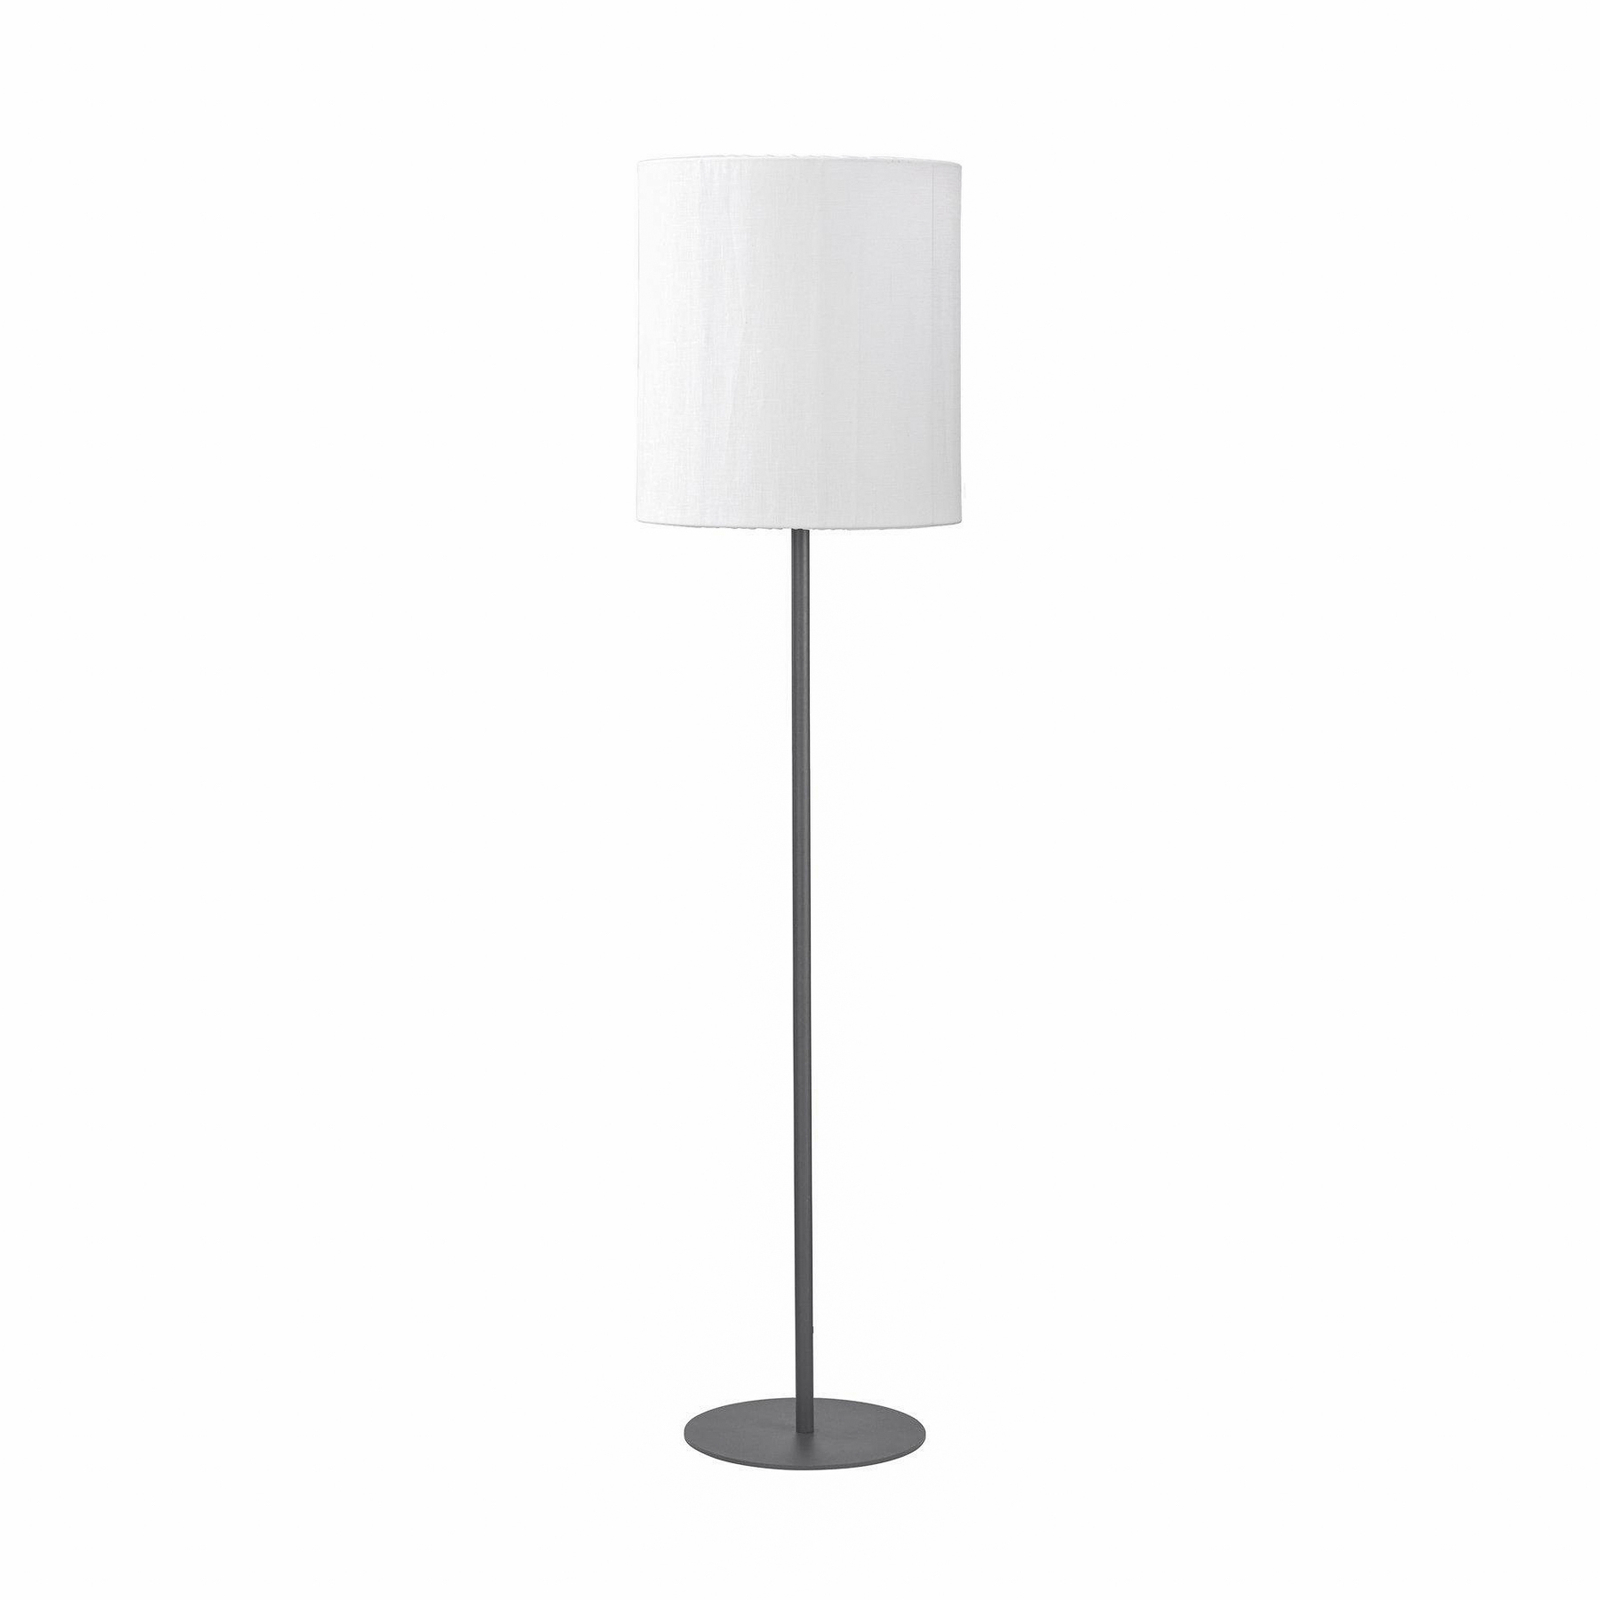 PR Home kültéri állólámpa Agnar, sötétszürke/fehér, 156 cm